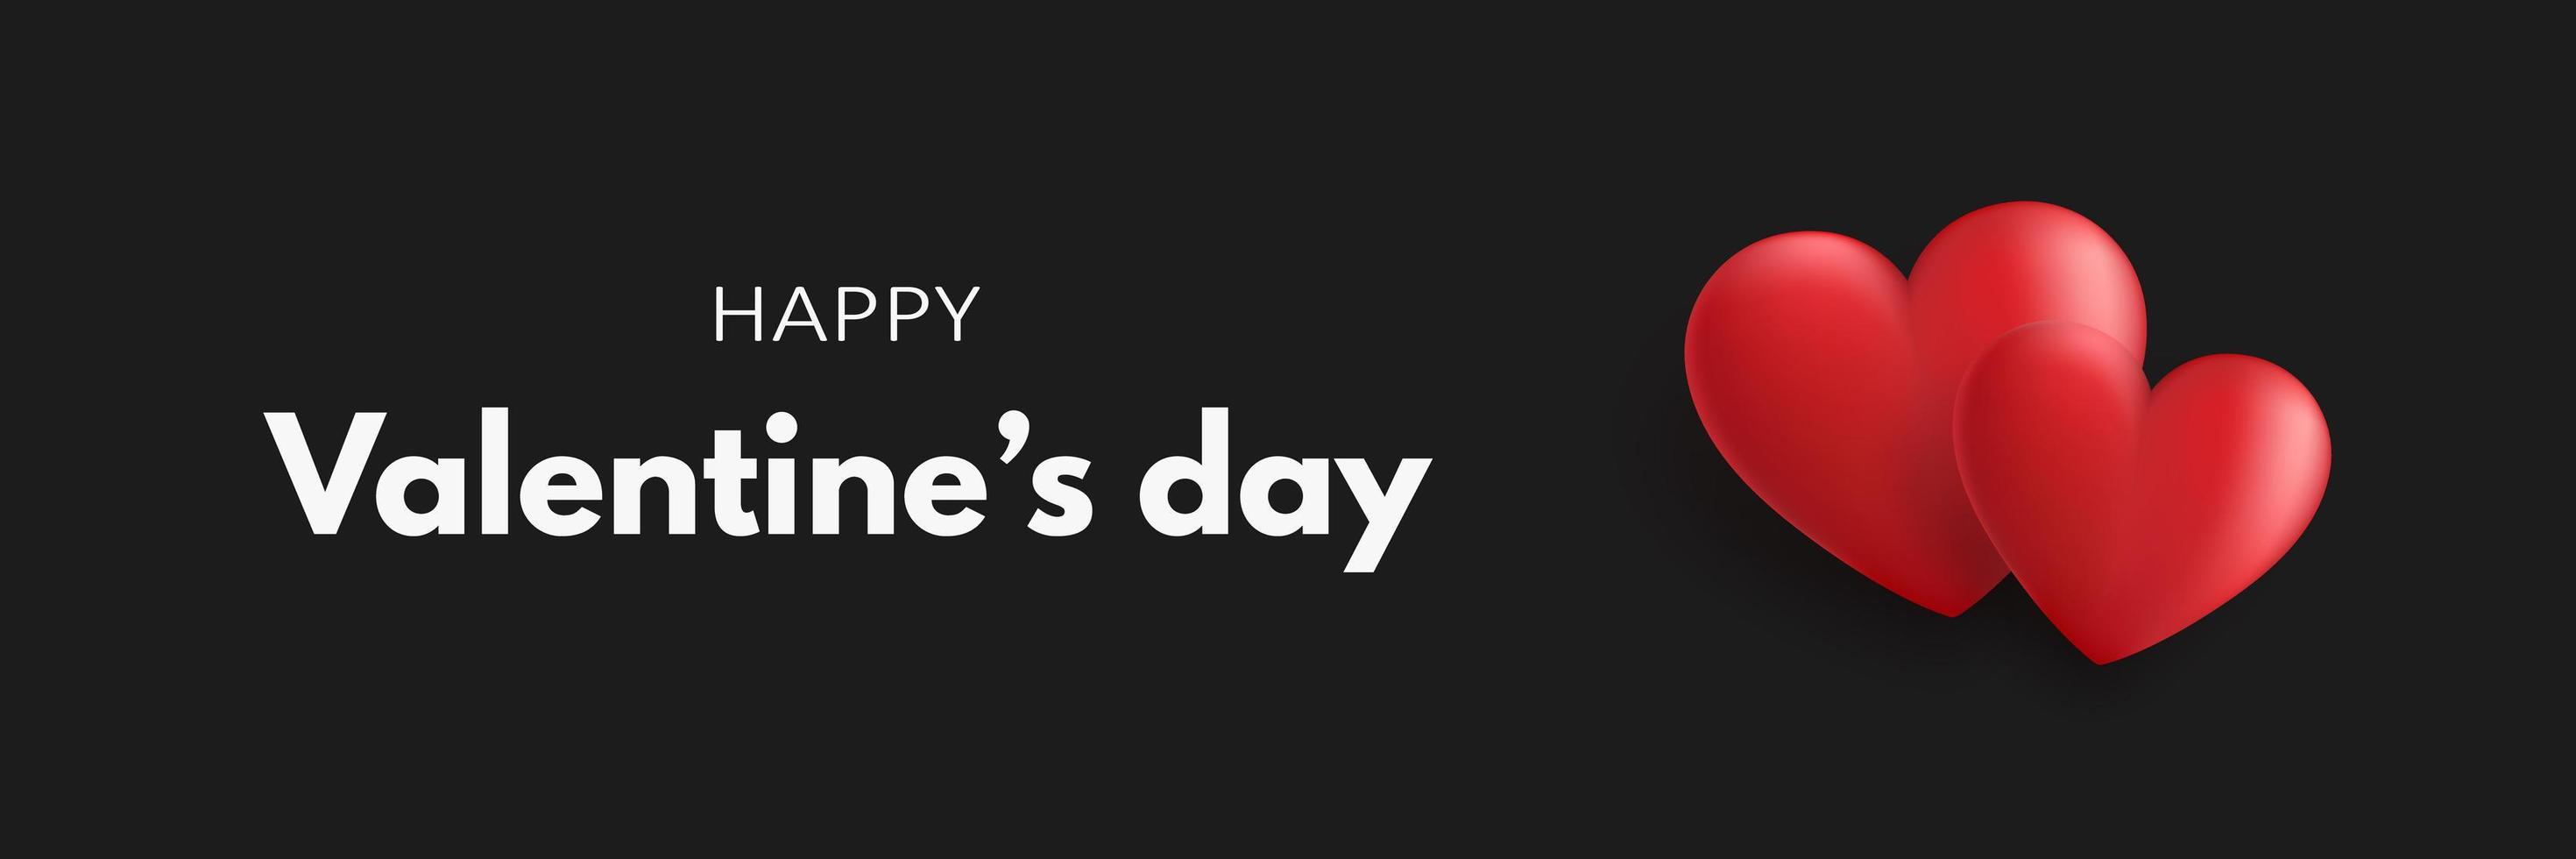 feliz día de san valentín banner con dos corazones rojos 3d sobre un fondo negro. ilustración vectorial vector